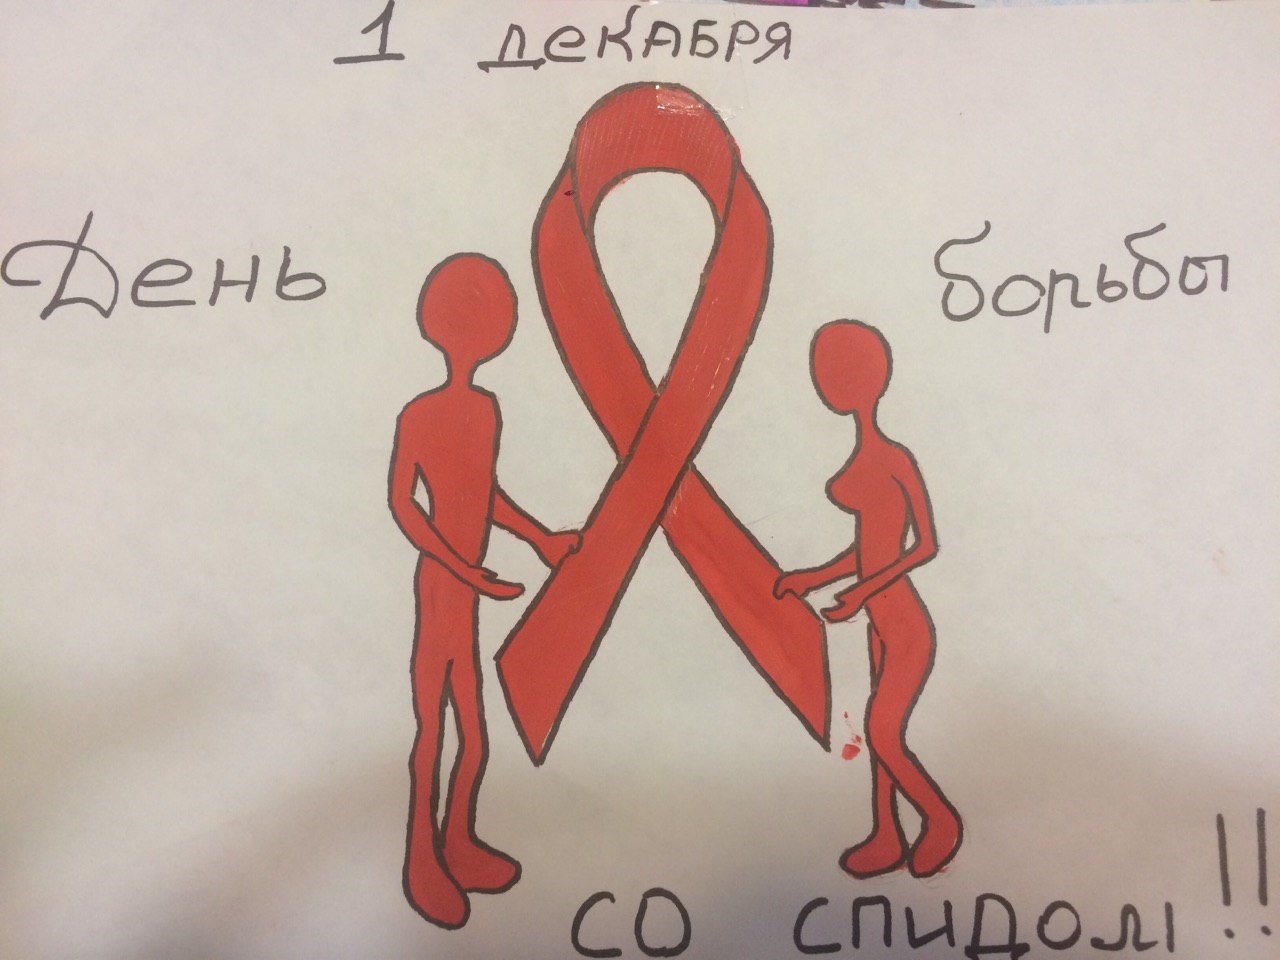 Борьба со СПИДОМ рисунки